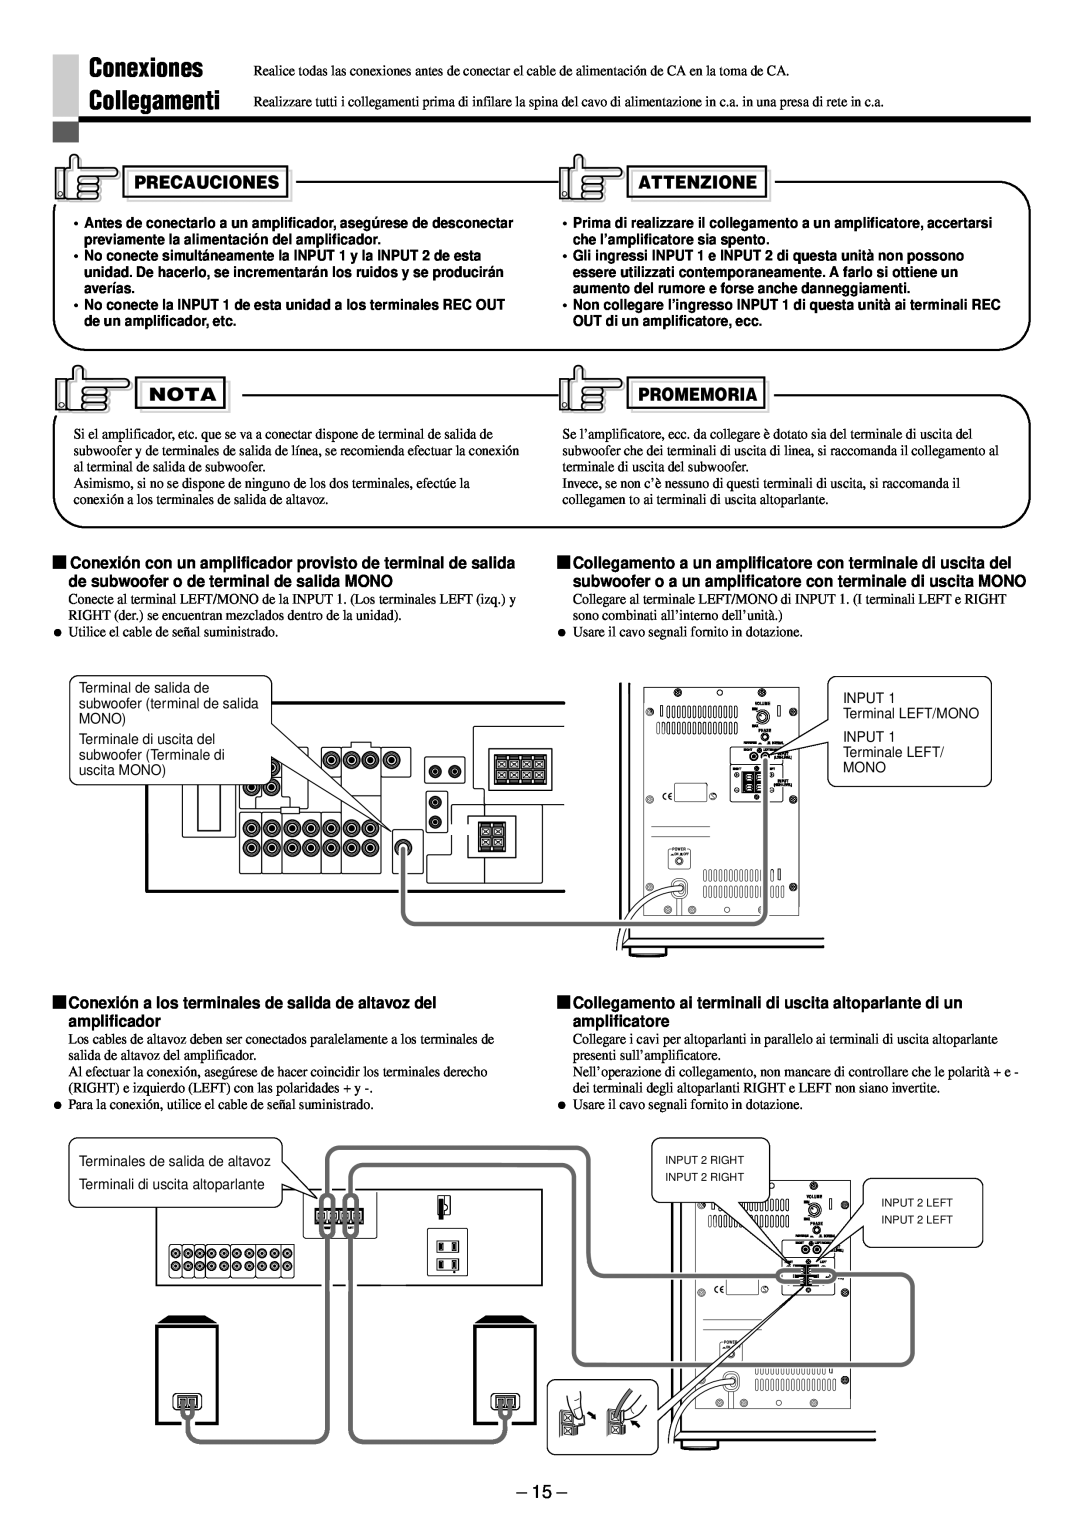 JVC SP-PW880 manual Conexiones Collegamenti, Precauciones, Attenzione, Nota, Promemoria 